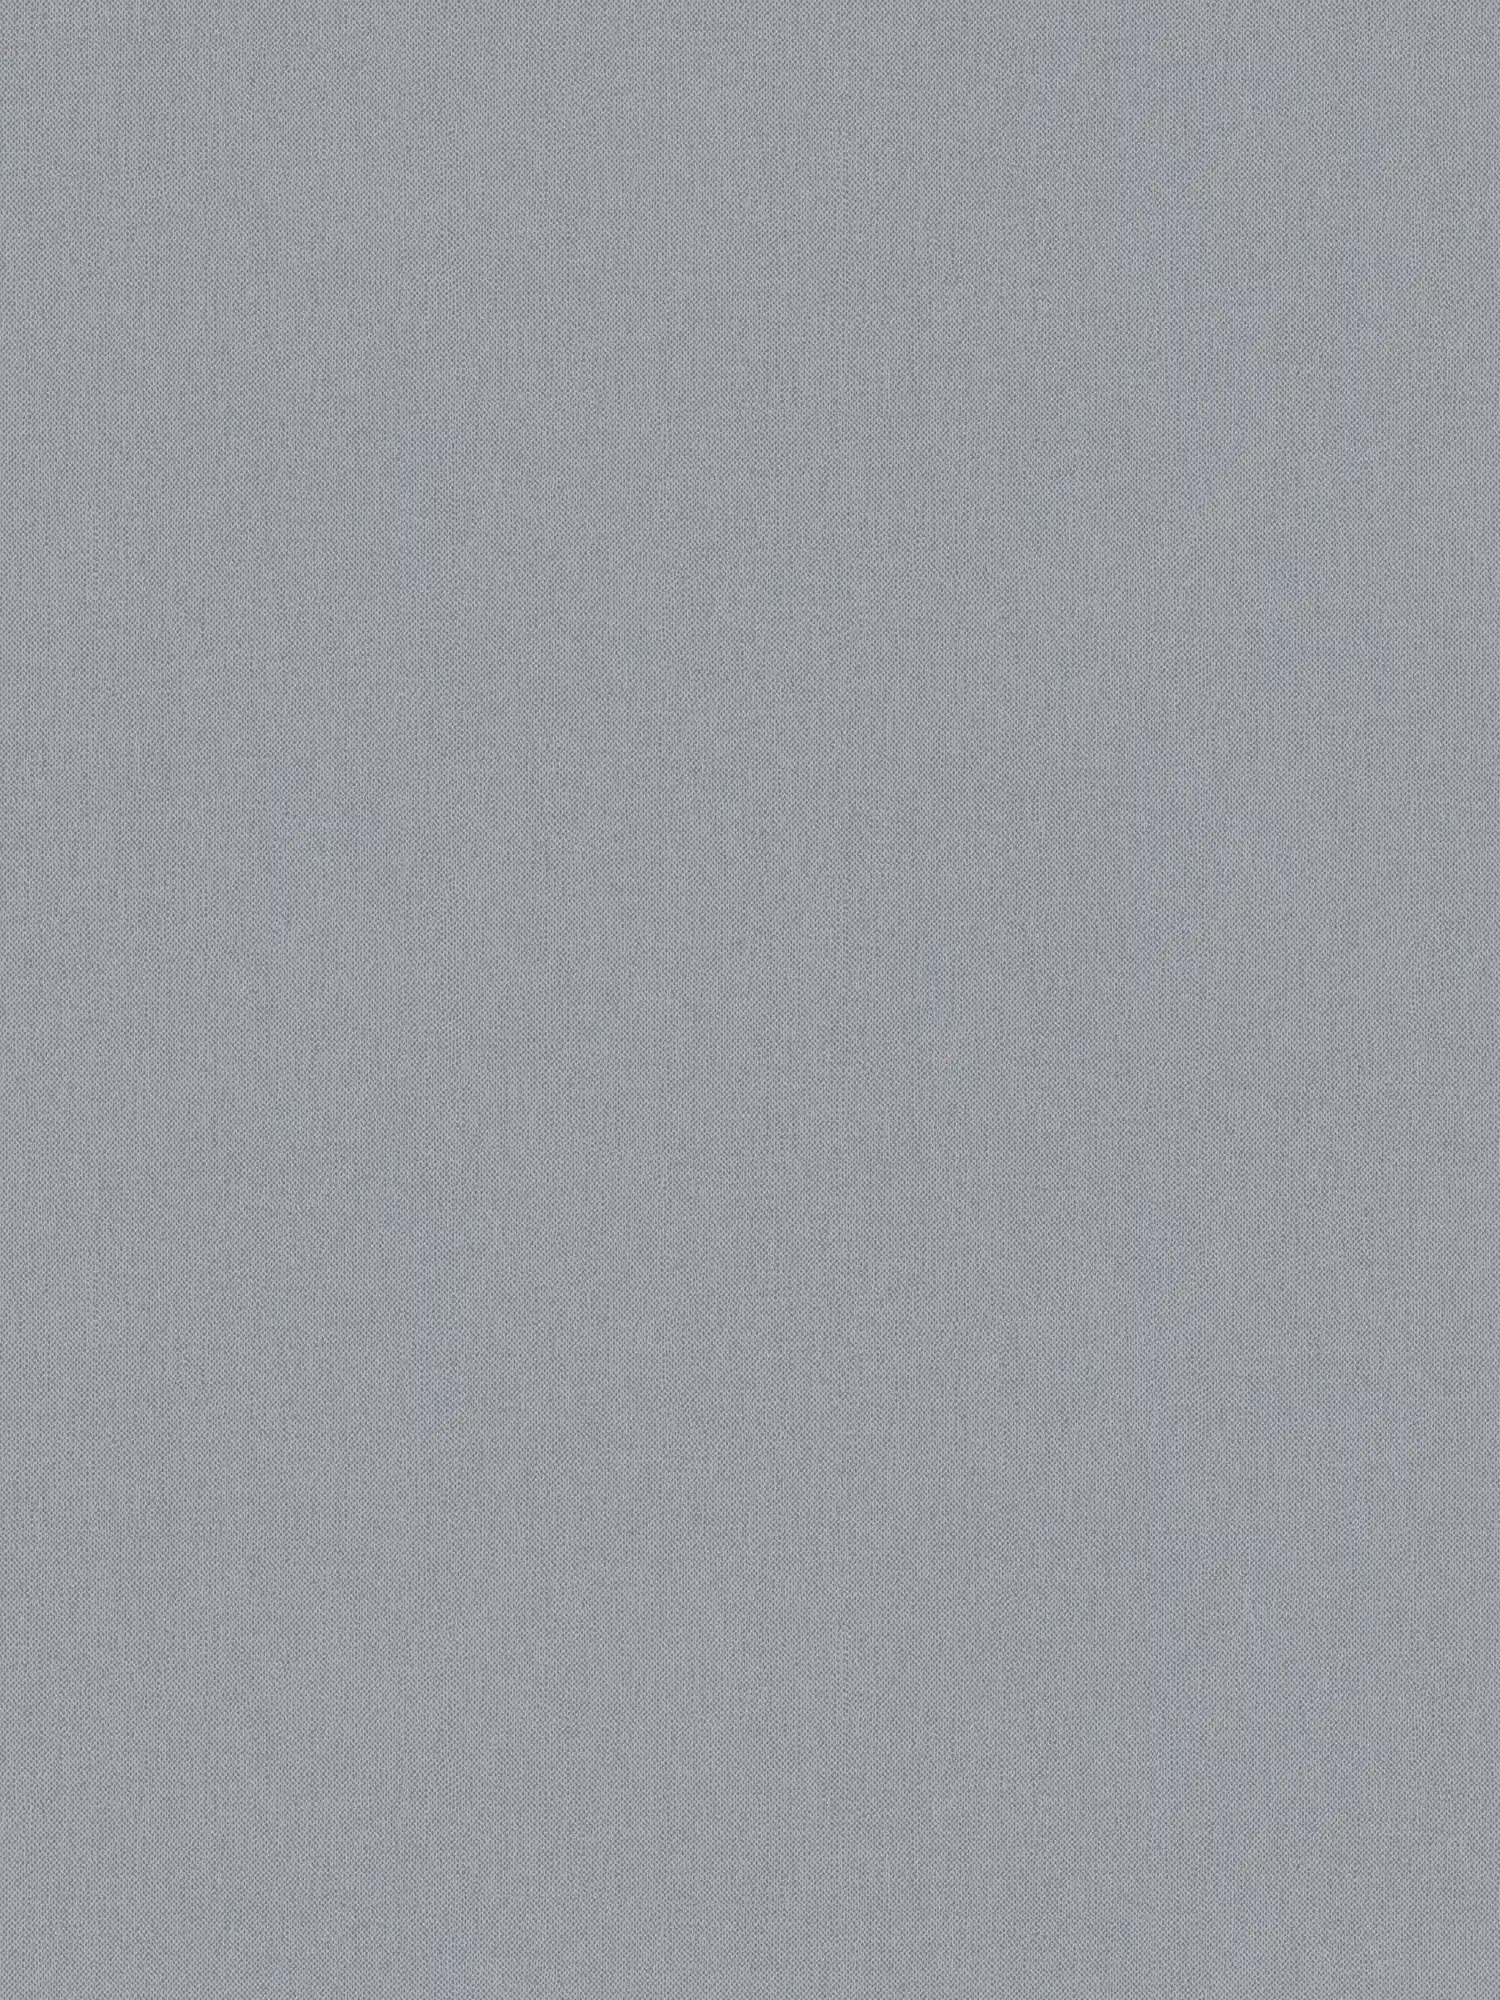 Papel pintado de aspecto de lino gris con estructura de tela y superficie mate
